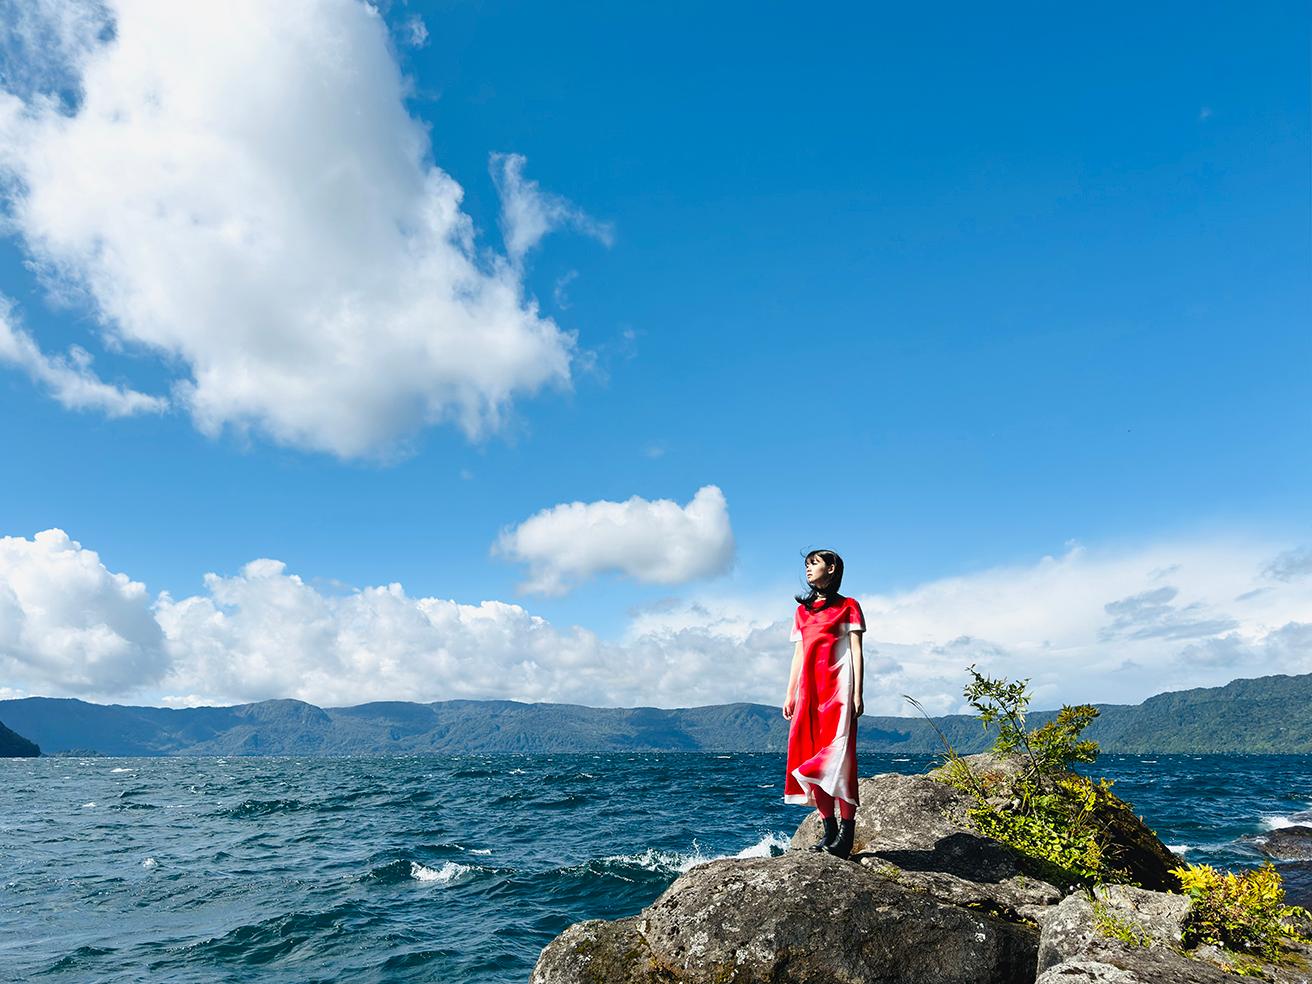 ■1倍メインカメラ 24mm 48MP　紺碧の湖面に白い雲と波が映える十和田湖畔。周囲の原生林からは鳥のさえずりが聞こえる。なだらかな稜線も美しい。転写プリントドレス344,300円（ロエベ／ロエベ ジャパン クライアントサービス TEL 03 6215 6116）。他はスタイリスト私物。